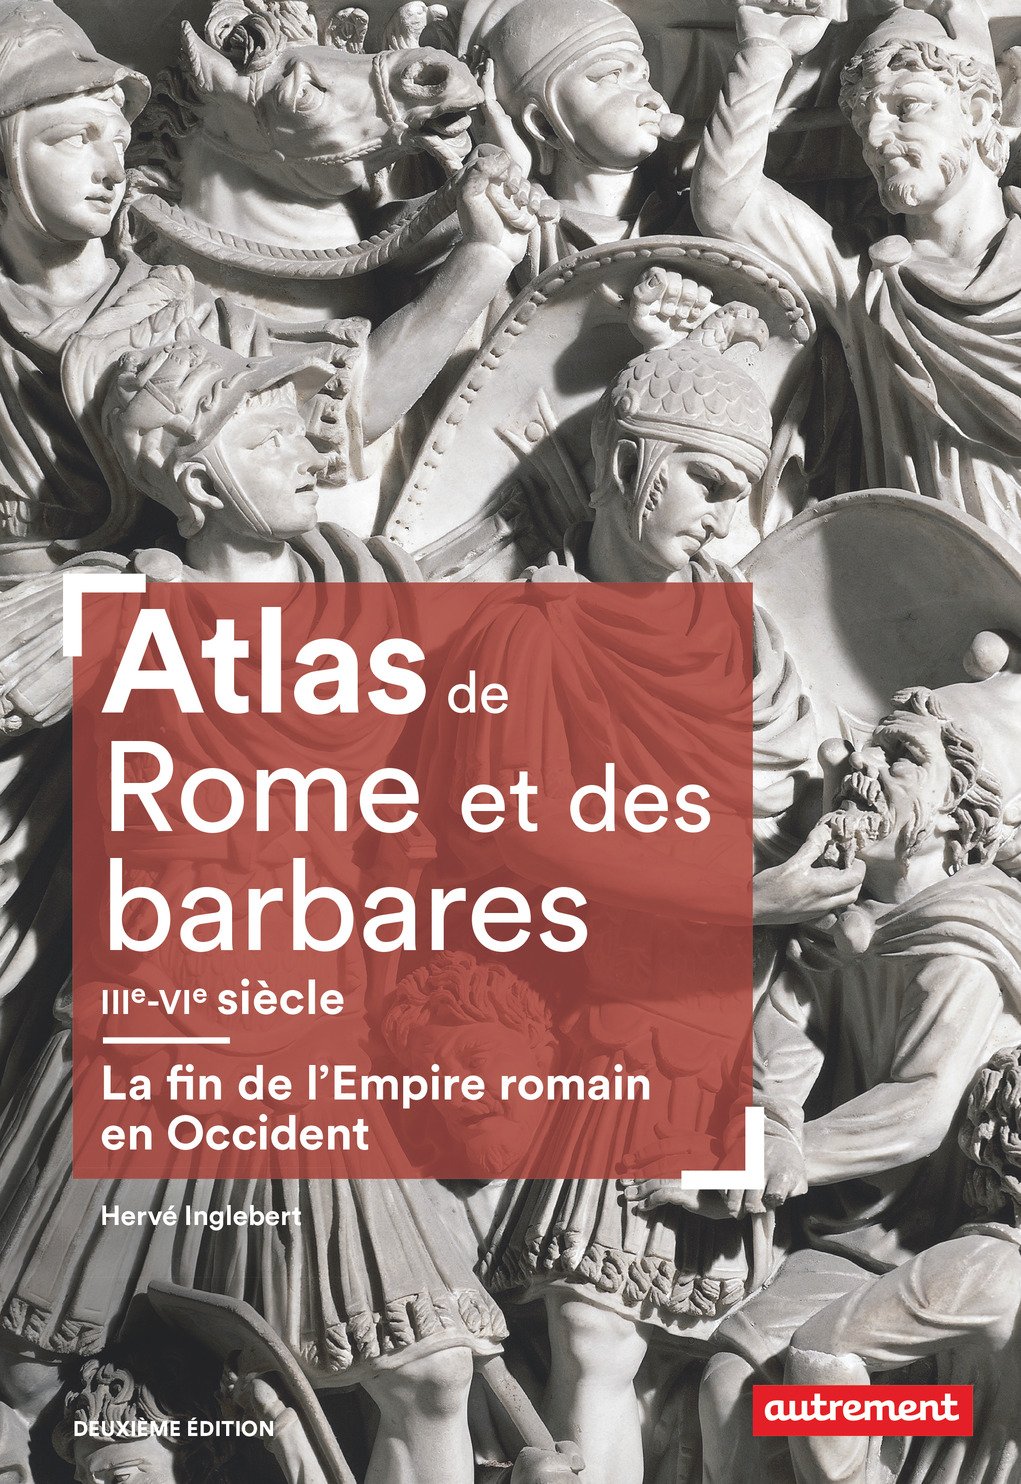 Atlas de Rome et des barbares, IIIe-VIe siècle. La fin de l'Empire romain en Occident, 2018, 2e éd.